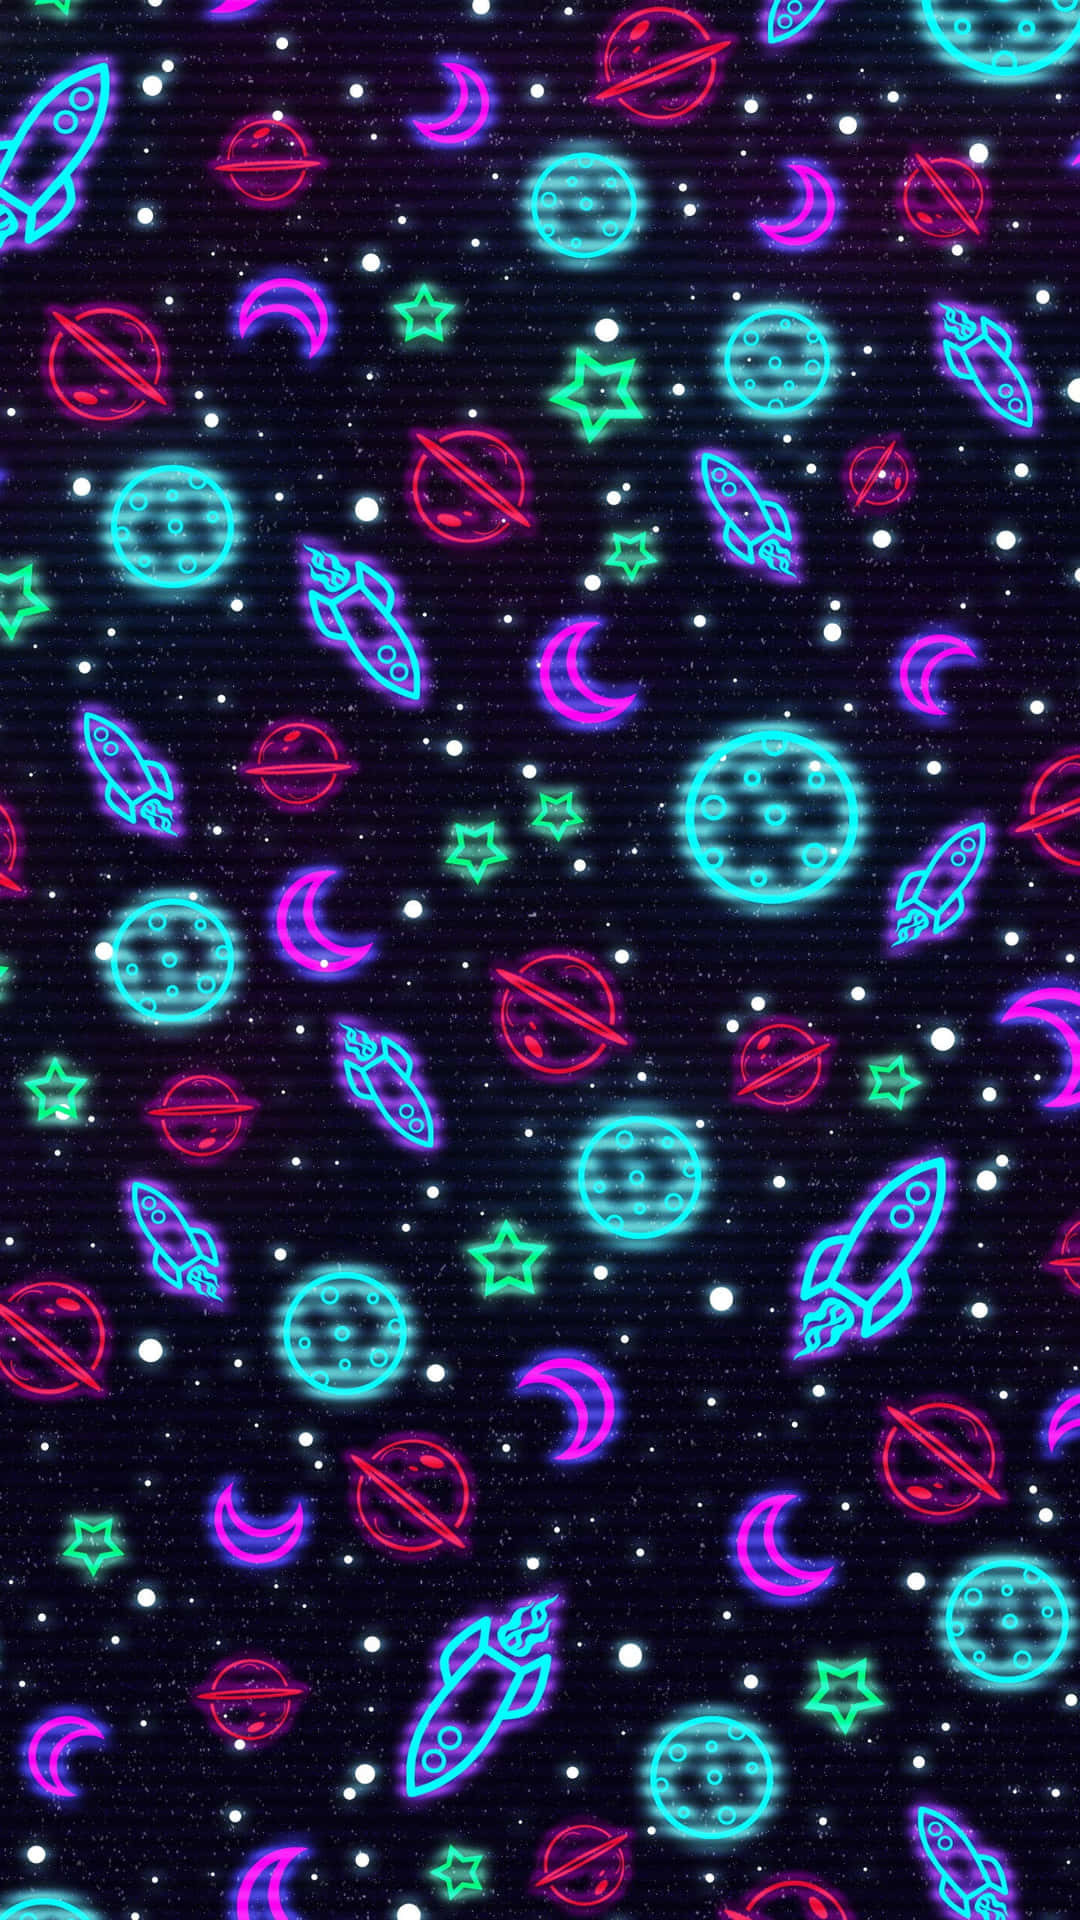 Explore the dazzling Neon Galaxy Wallpaper